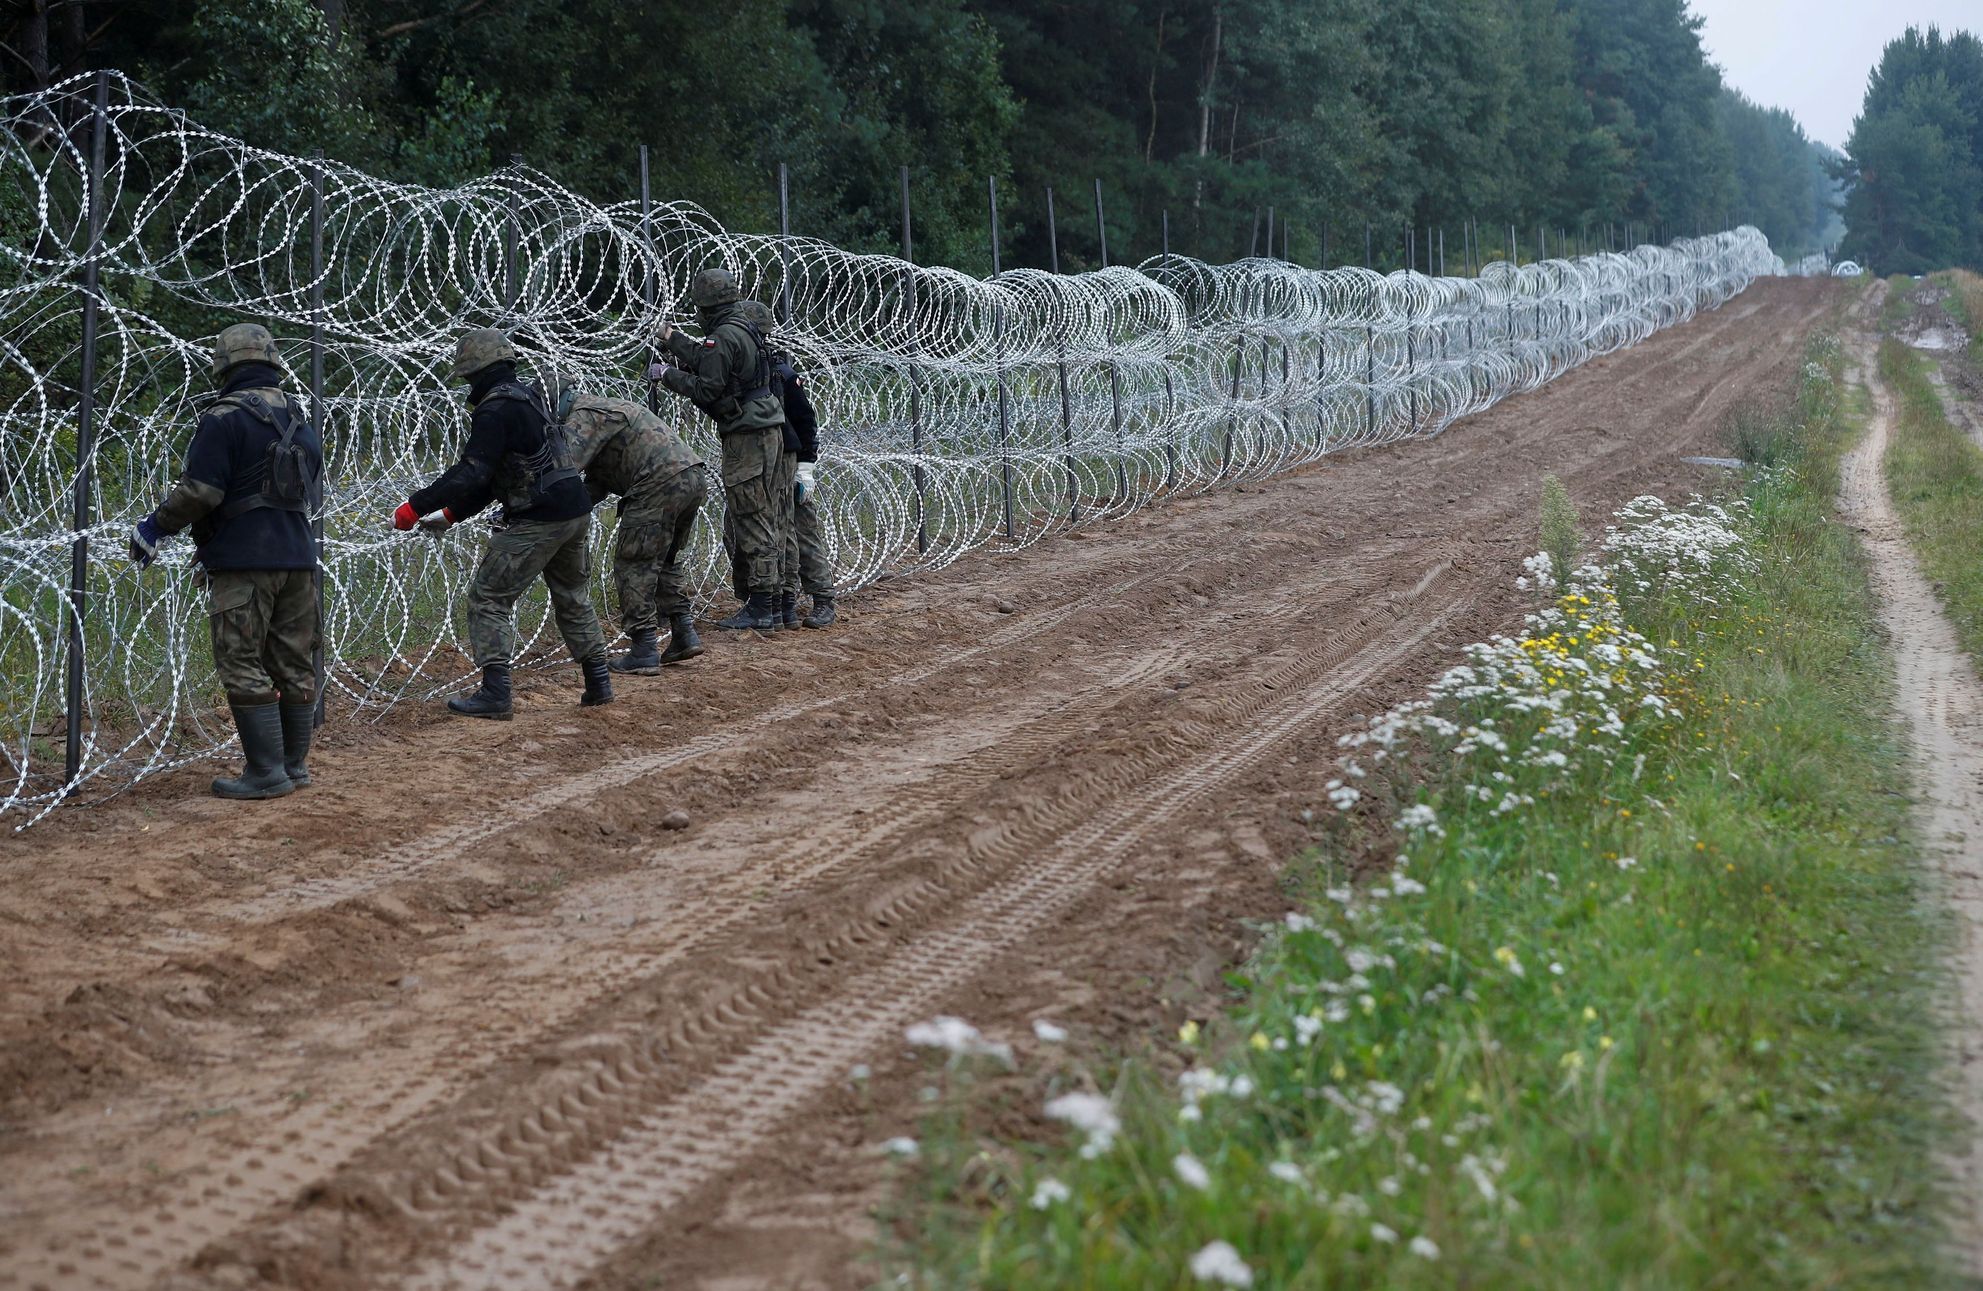 Plot na hranicích Polska s Běloruskem.